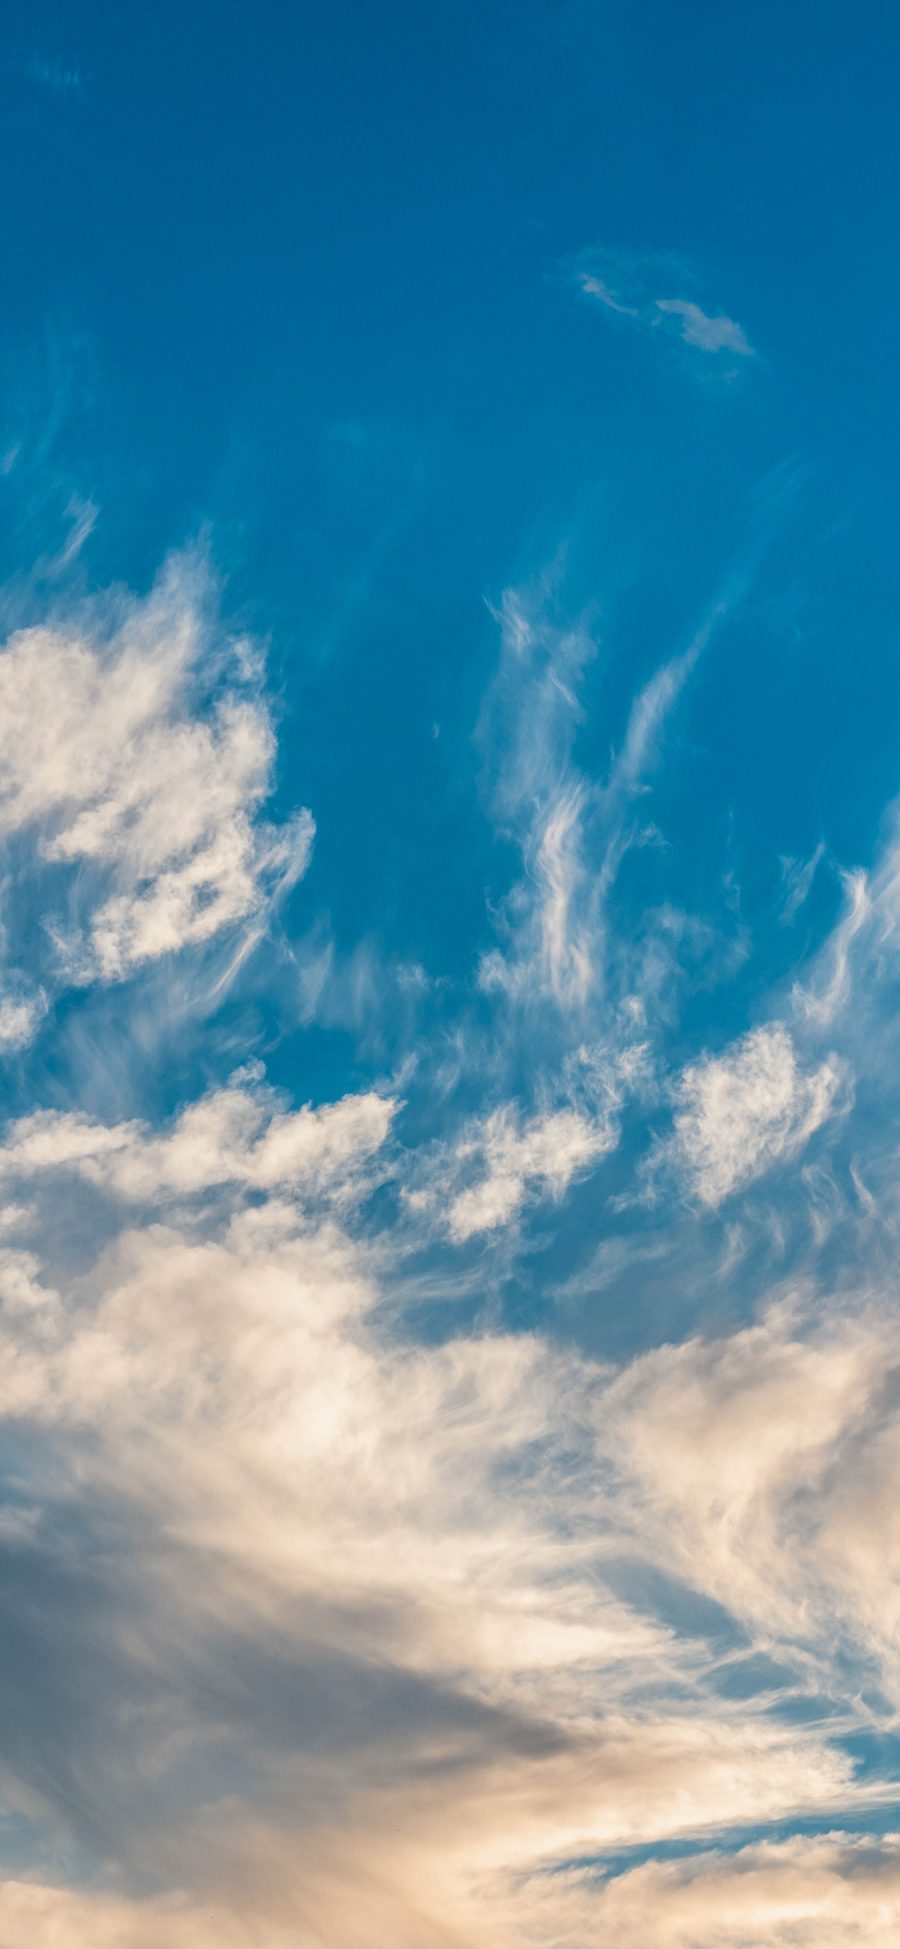 [2436×1125]天空 蓝天白云  云彩 蔚蓝 苹果手机壁纸图片